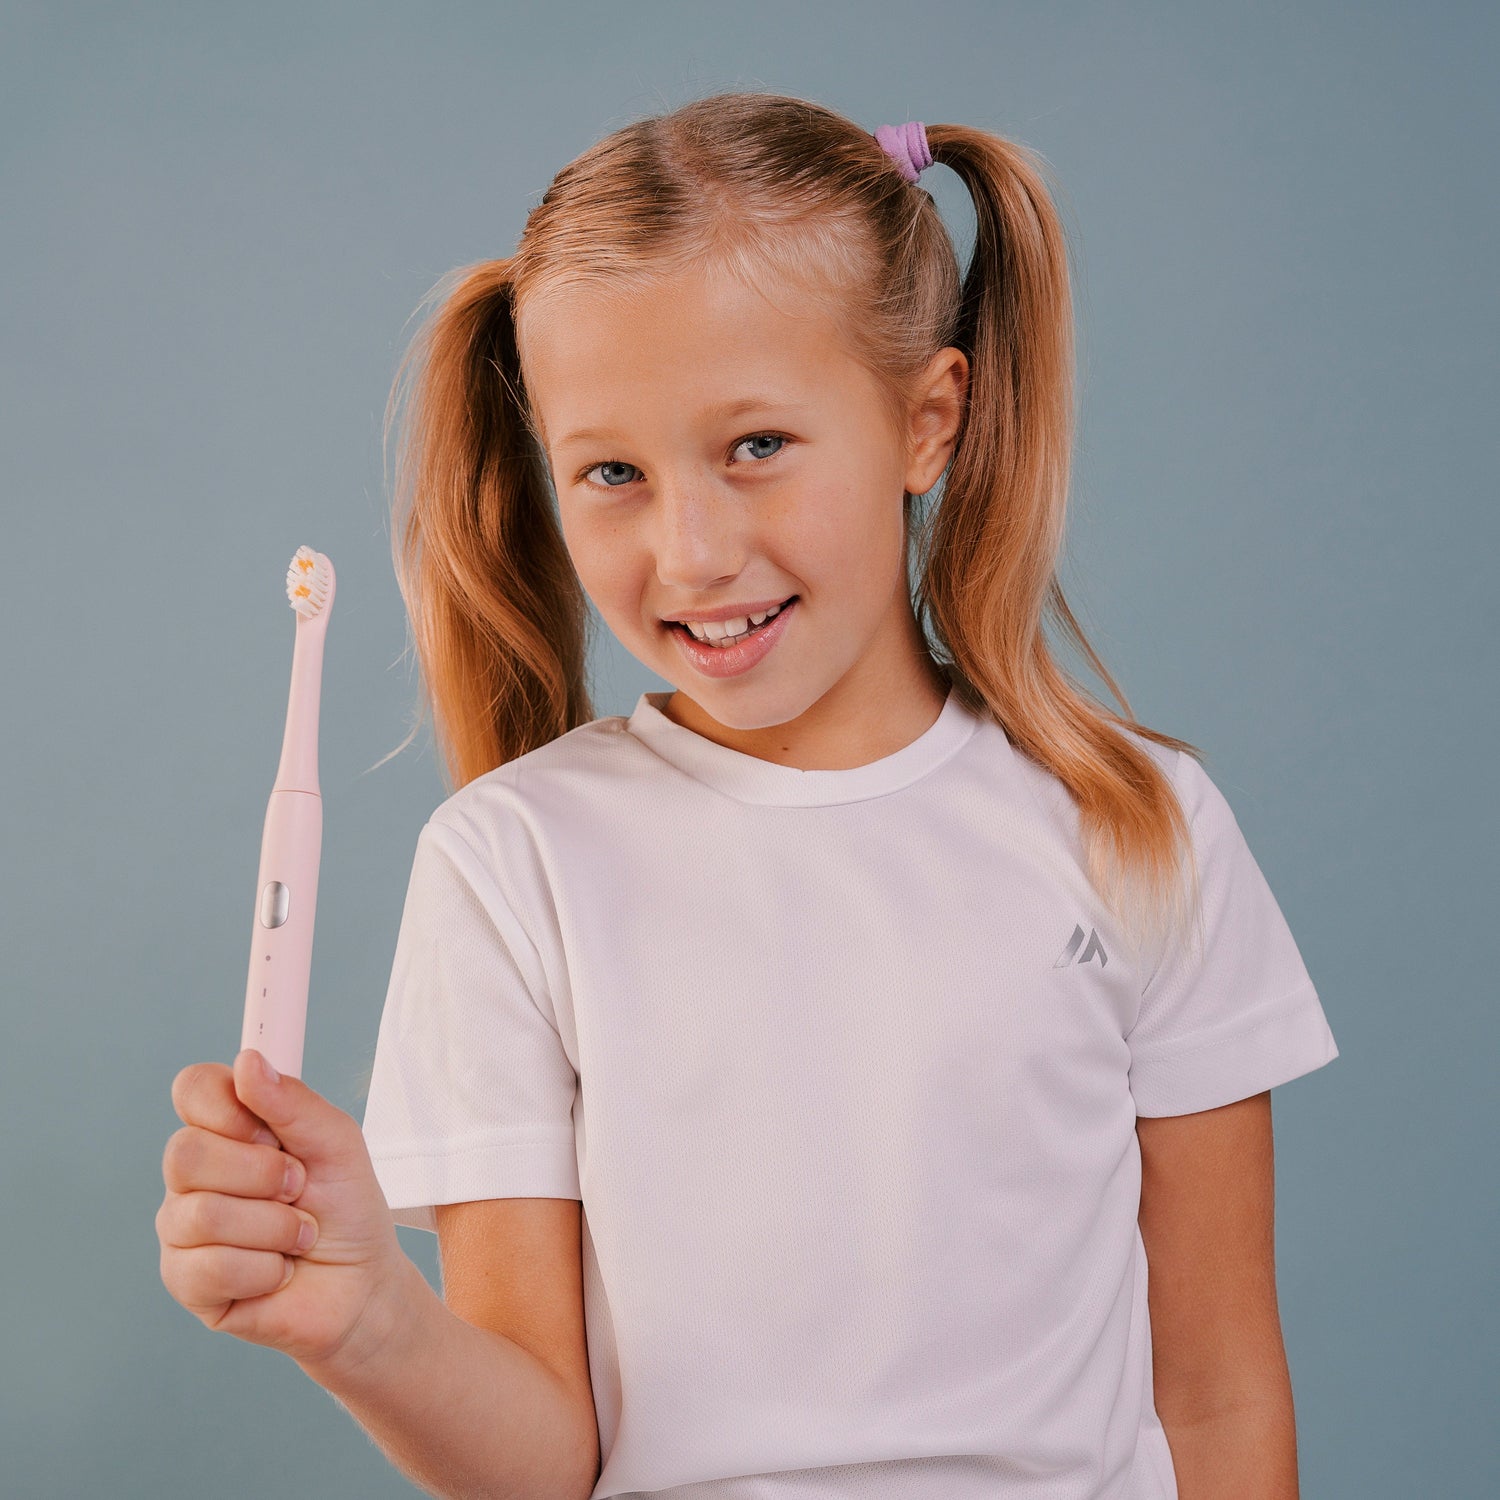 НАБОР детская электрическая зубная щетка Smiley Light розовая купити дитячу електричну зубну щітку купить детскую электрическую зубную щетку купить электрощетку детскую електрична зубна щітка дитяча зубні щітки електричні дитячі